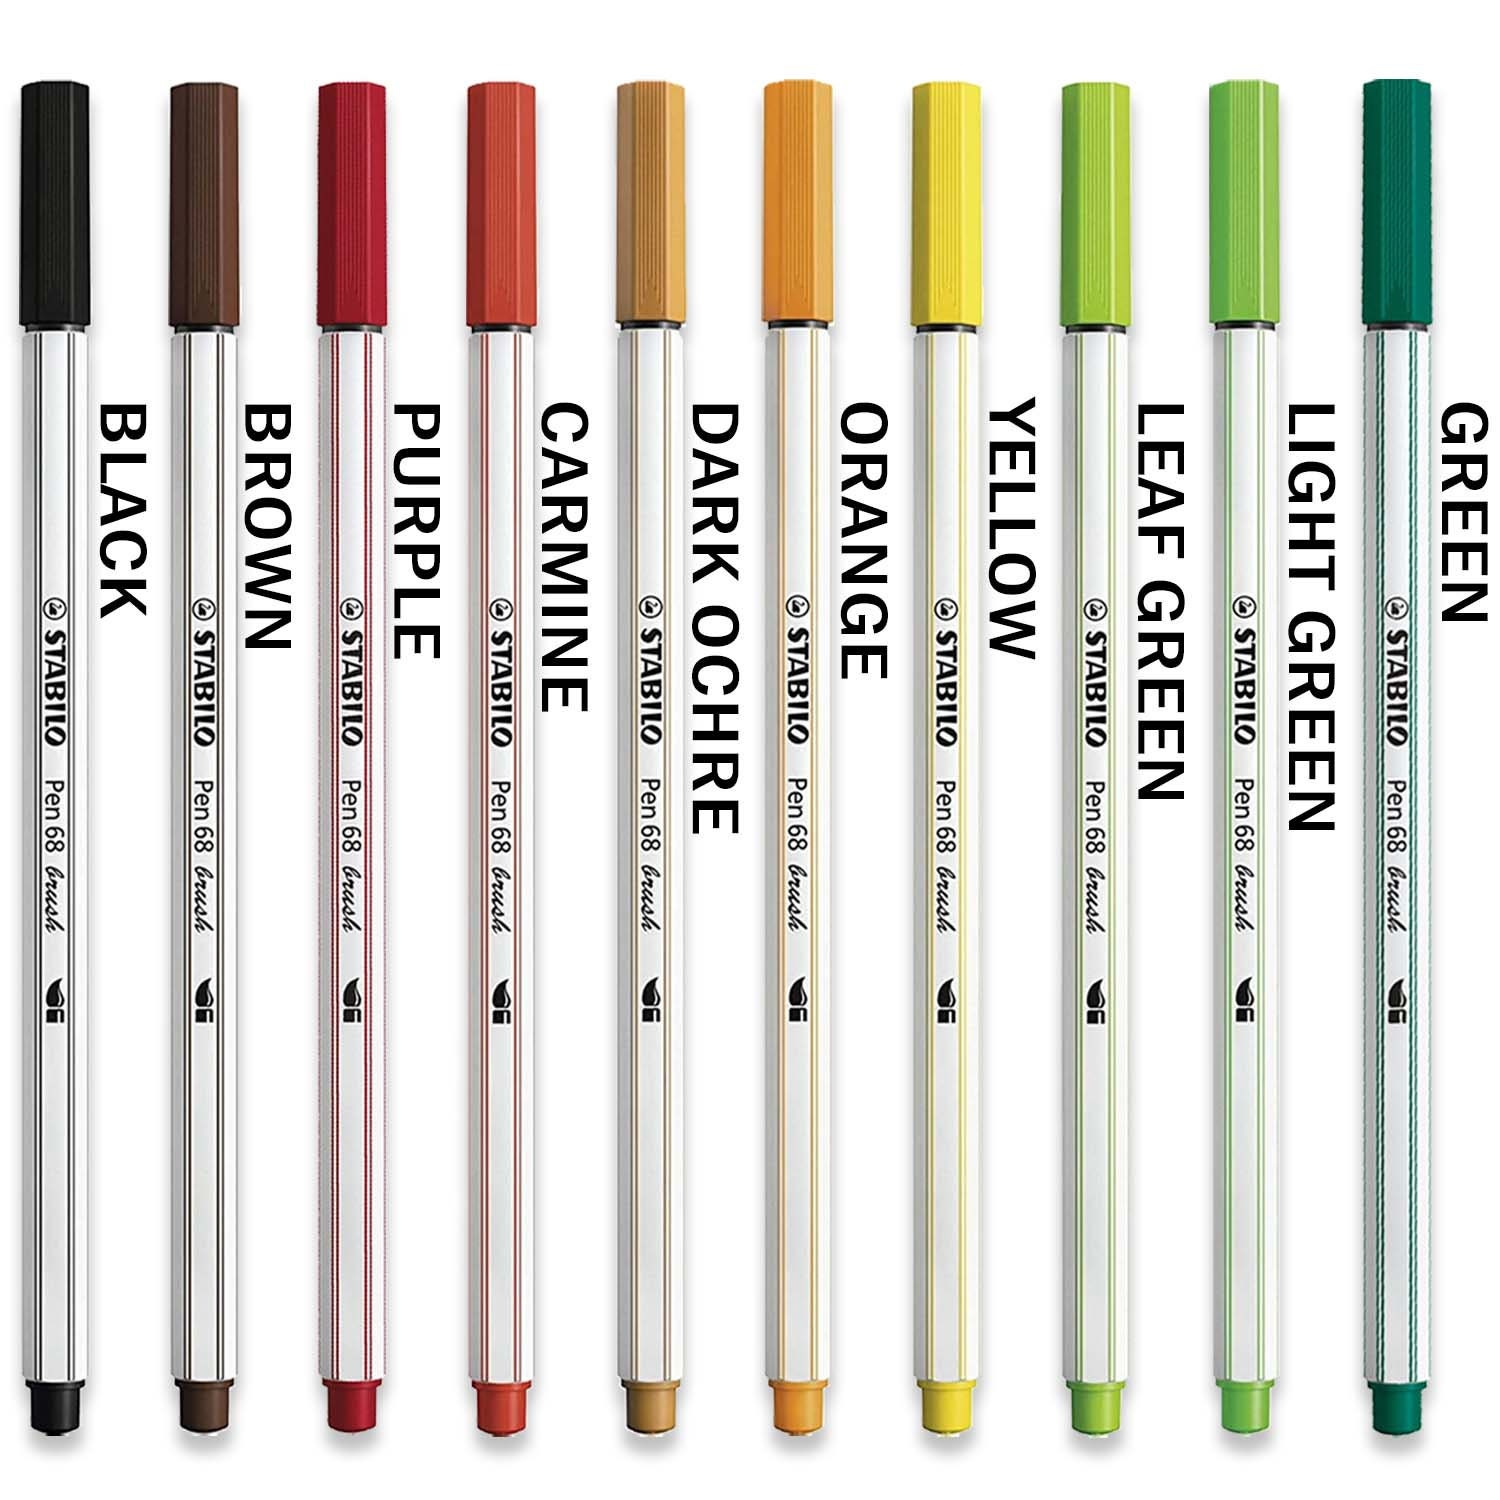 STABILO Pen 68 brush Premium Fibre Tip Pen Set of 8 - Spring Tones